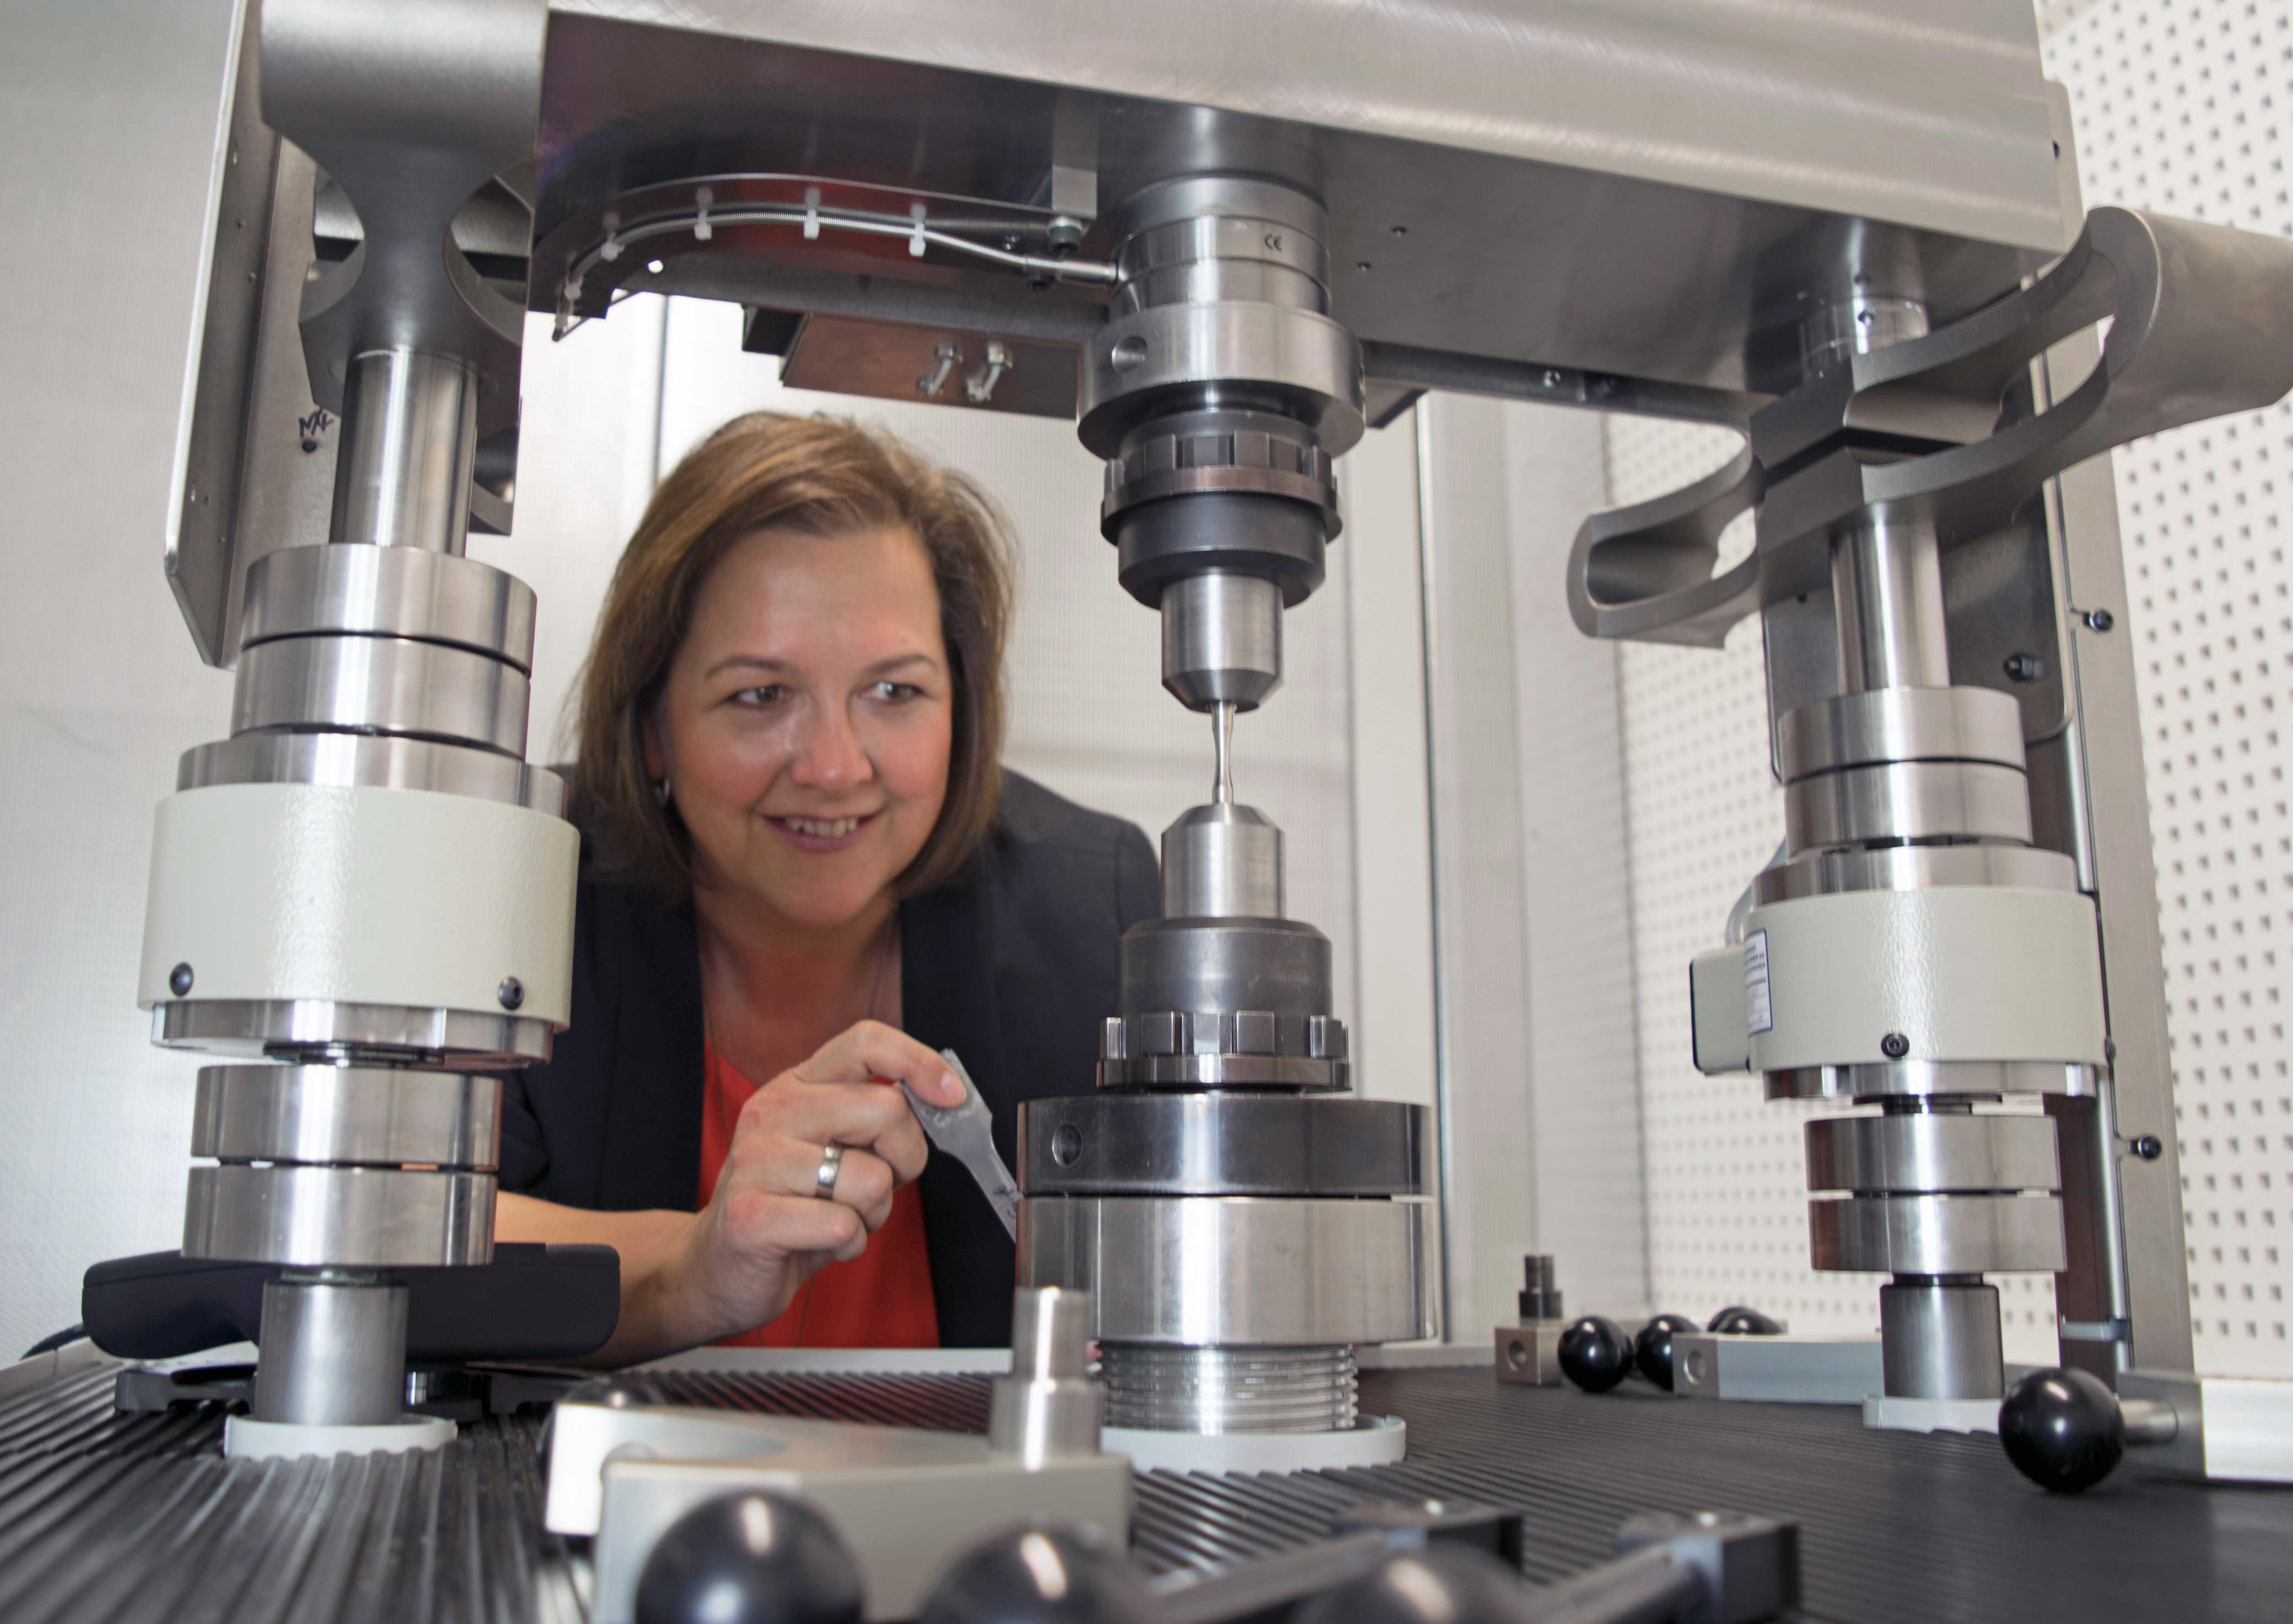 Prof. Dr. Martina Zimmermann working at the 1000-Hz-resonance pulsator at Fraunhofer IWS Dresden